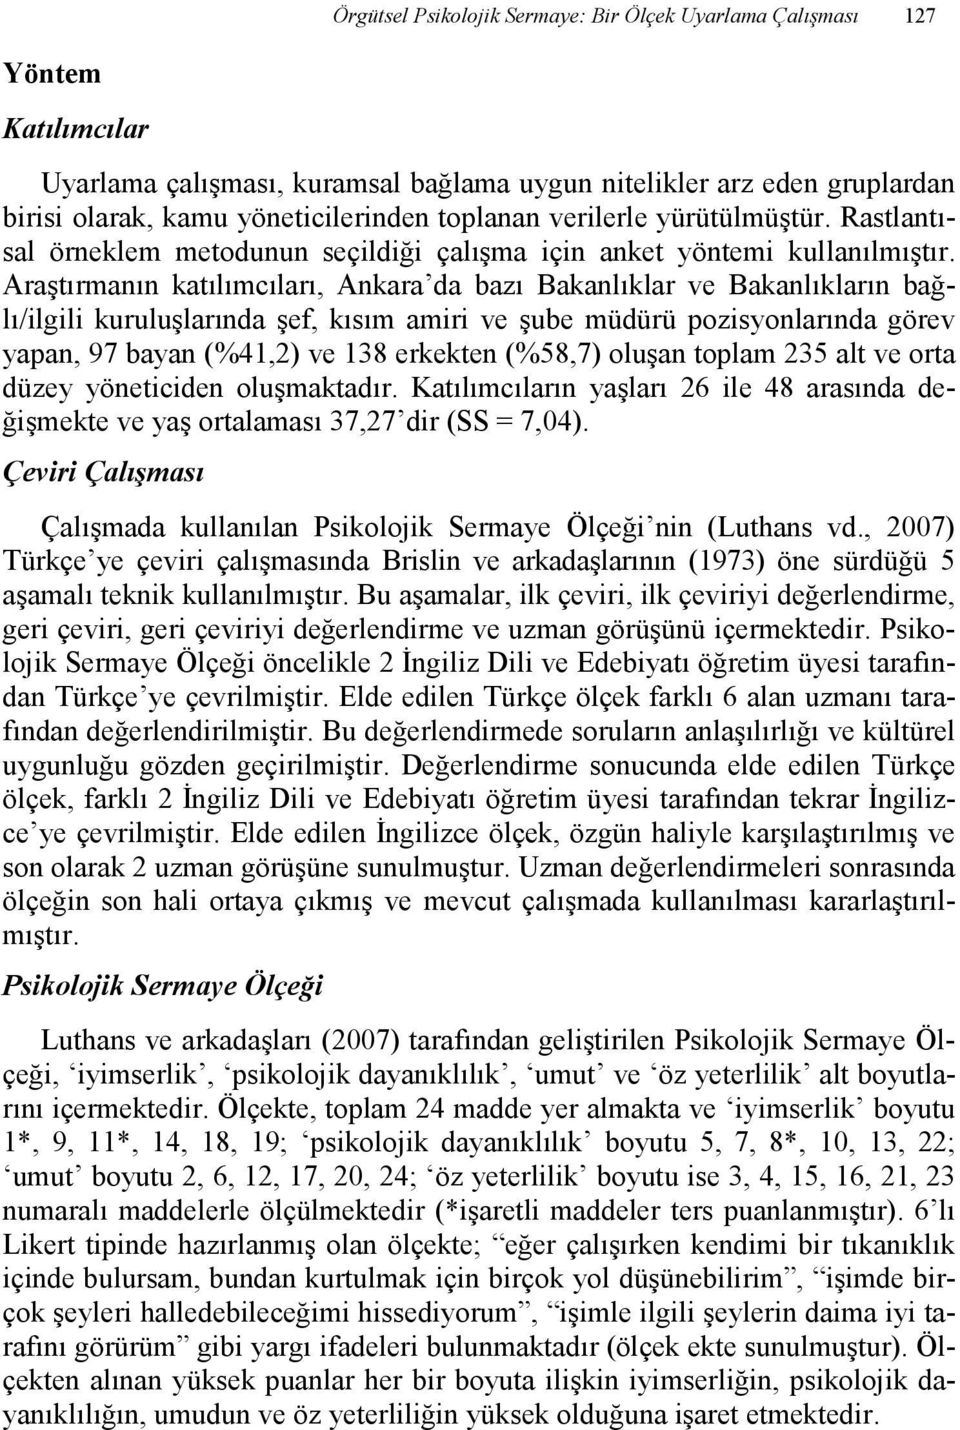 Araştırmanın katılımcıları, Ankara da bazı Bakanlıklar ve Bakanlıkların bağlı/ilgili kuruluşlarında şef, kısım amiri ve şube müdürü pozisyonlarında görev yapan, 97 bayan (%41,2) ve 138 erkekten